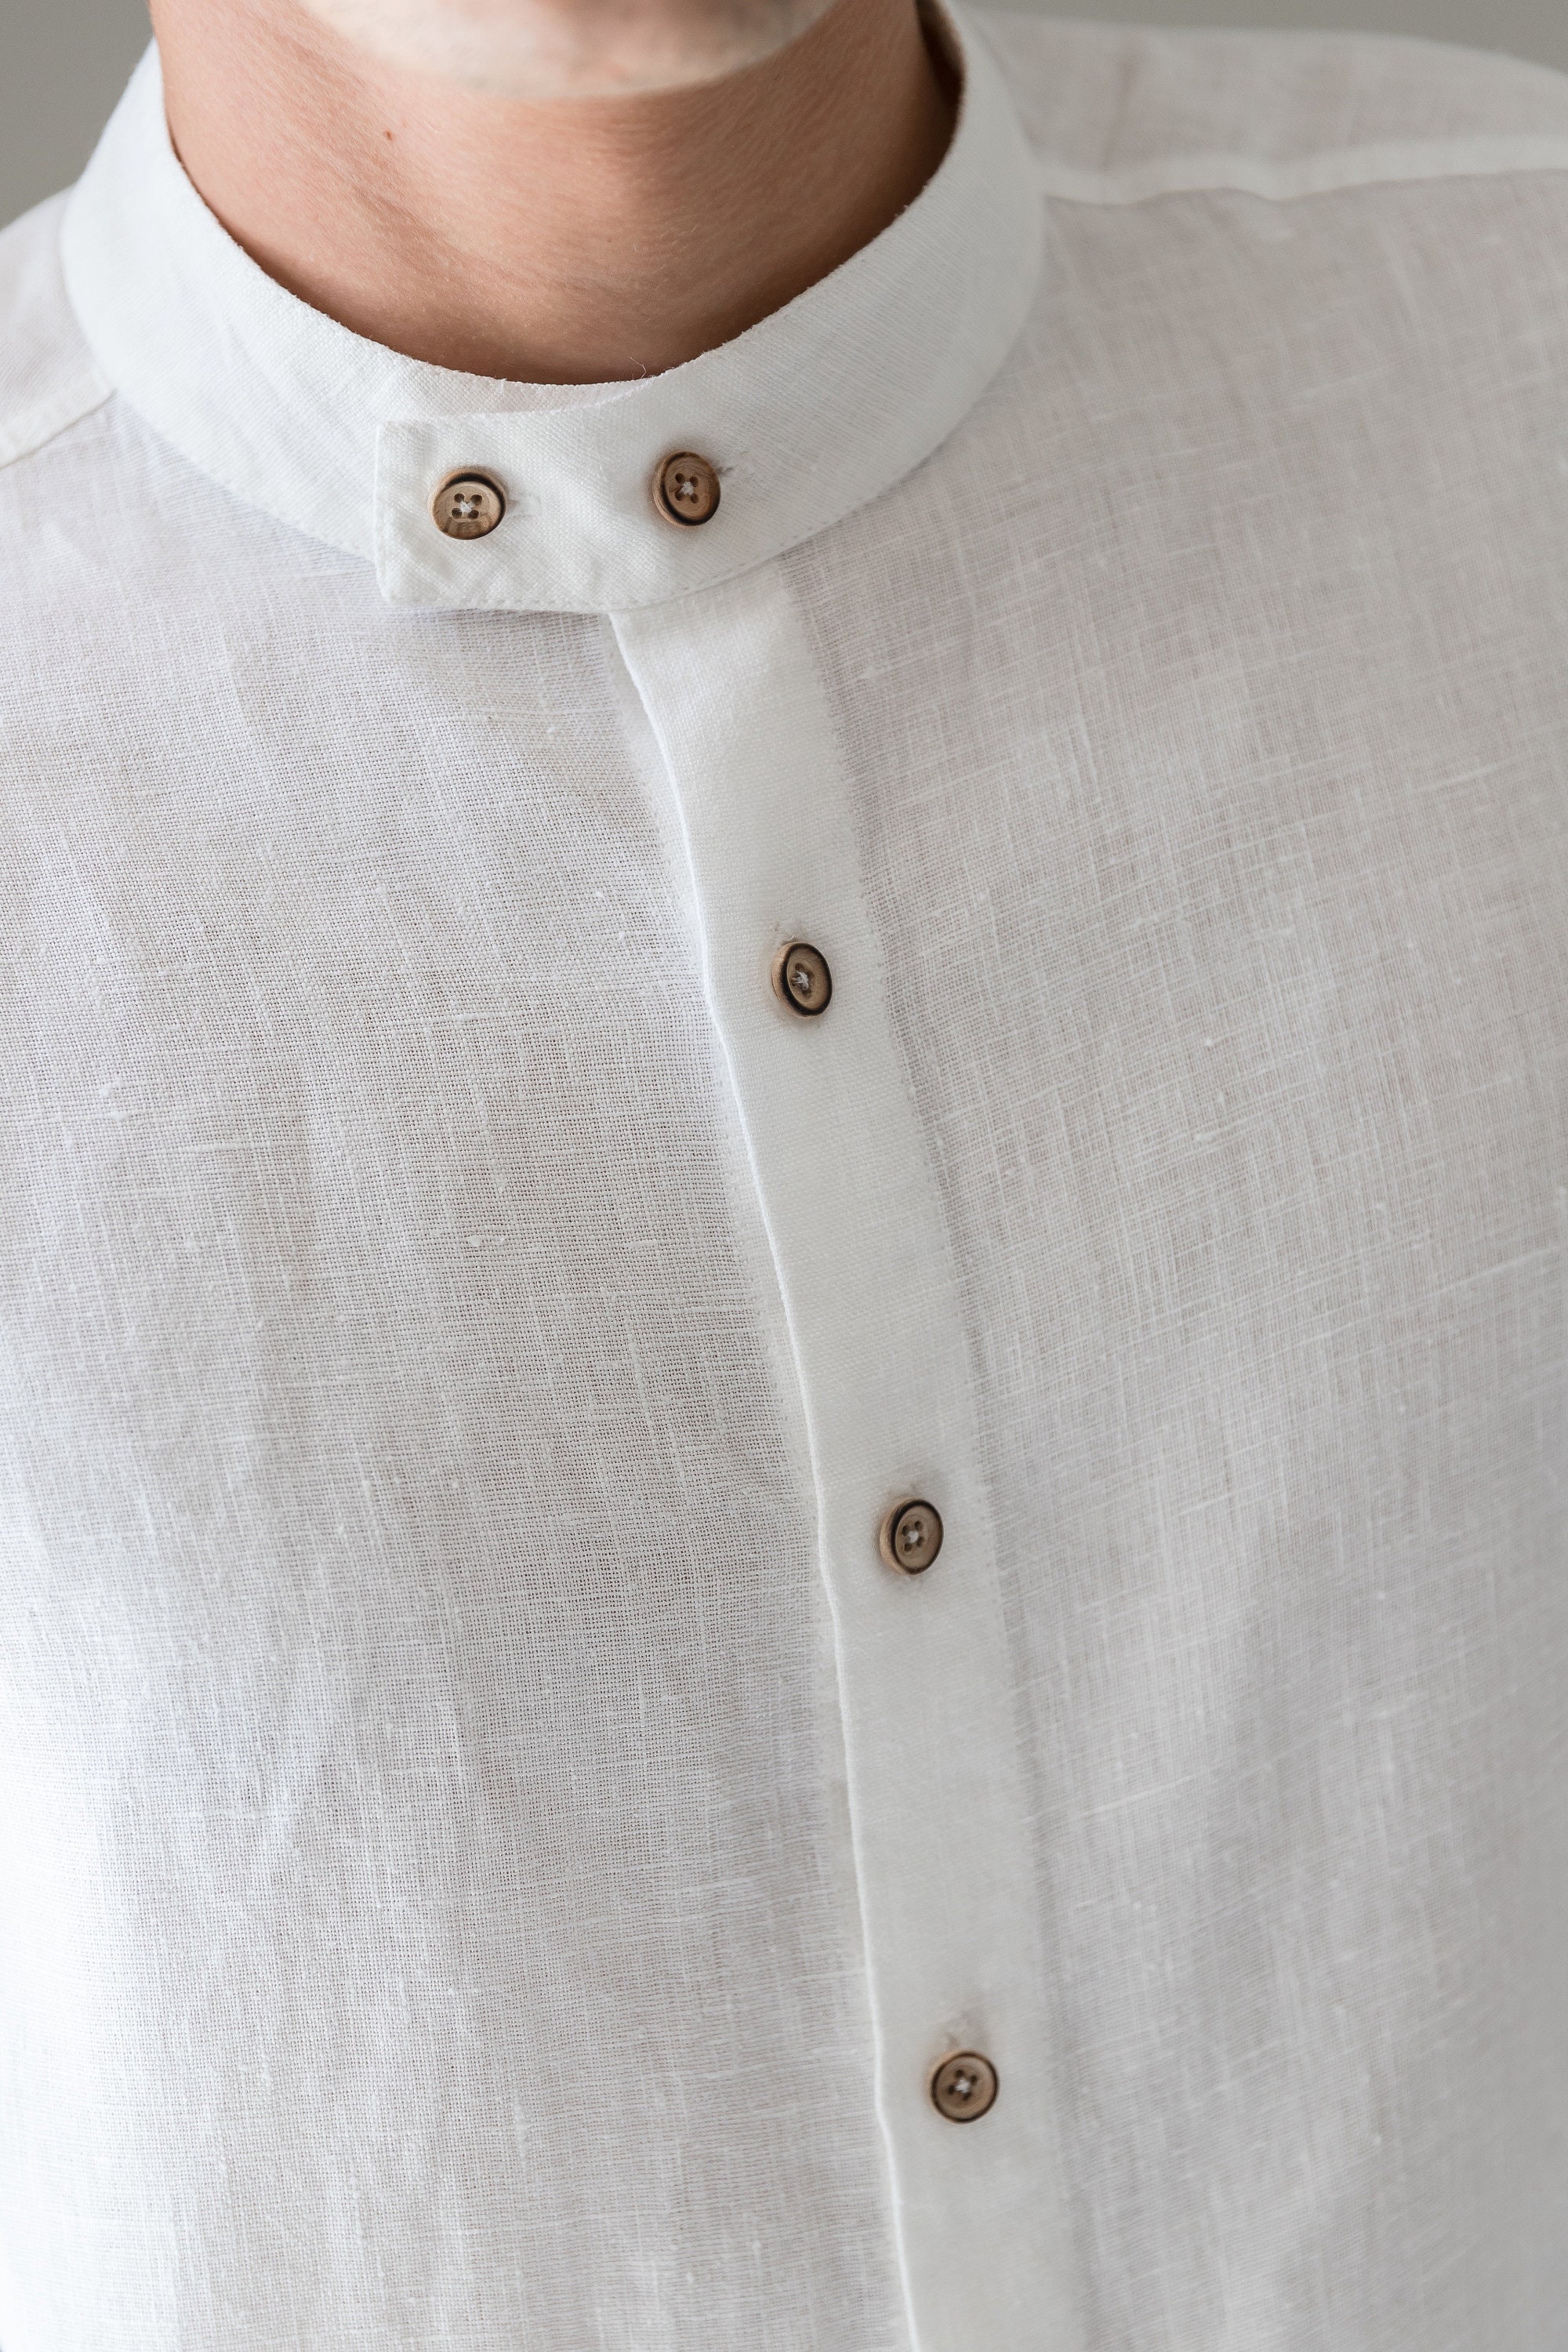 Mens linen shirt Band collar shirt White linen dress shirt | Etsy